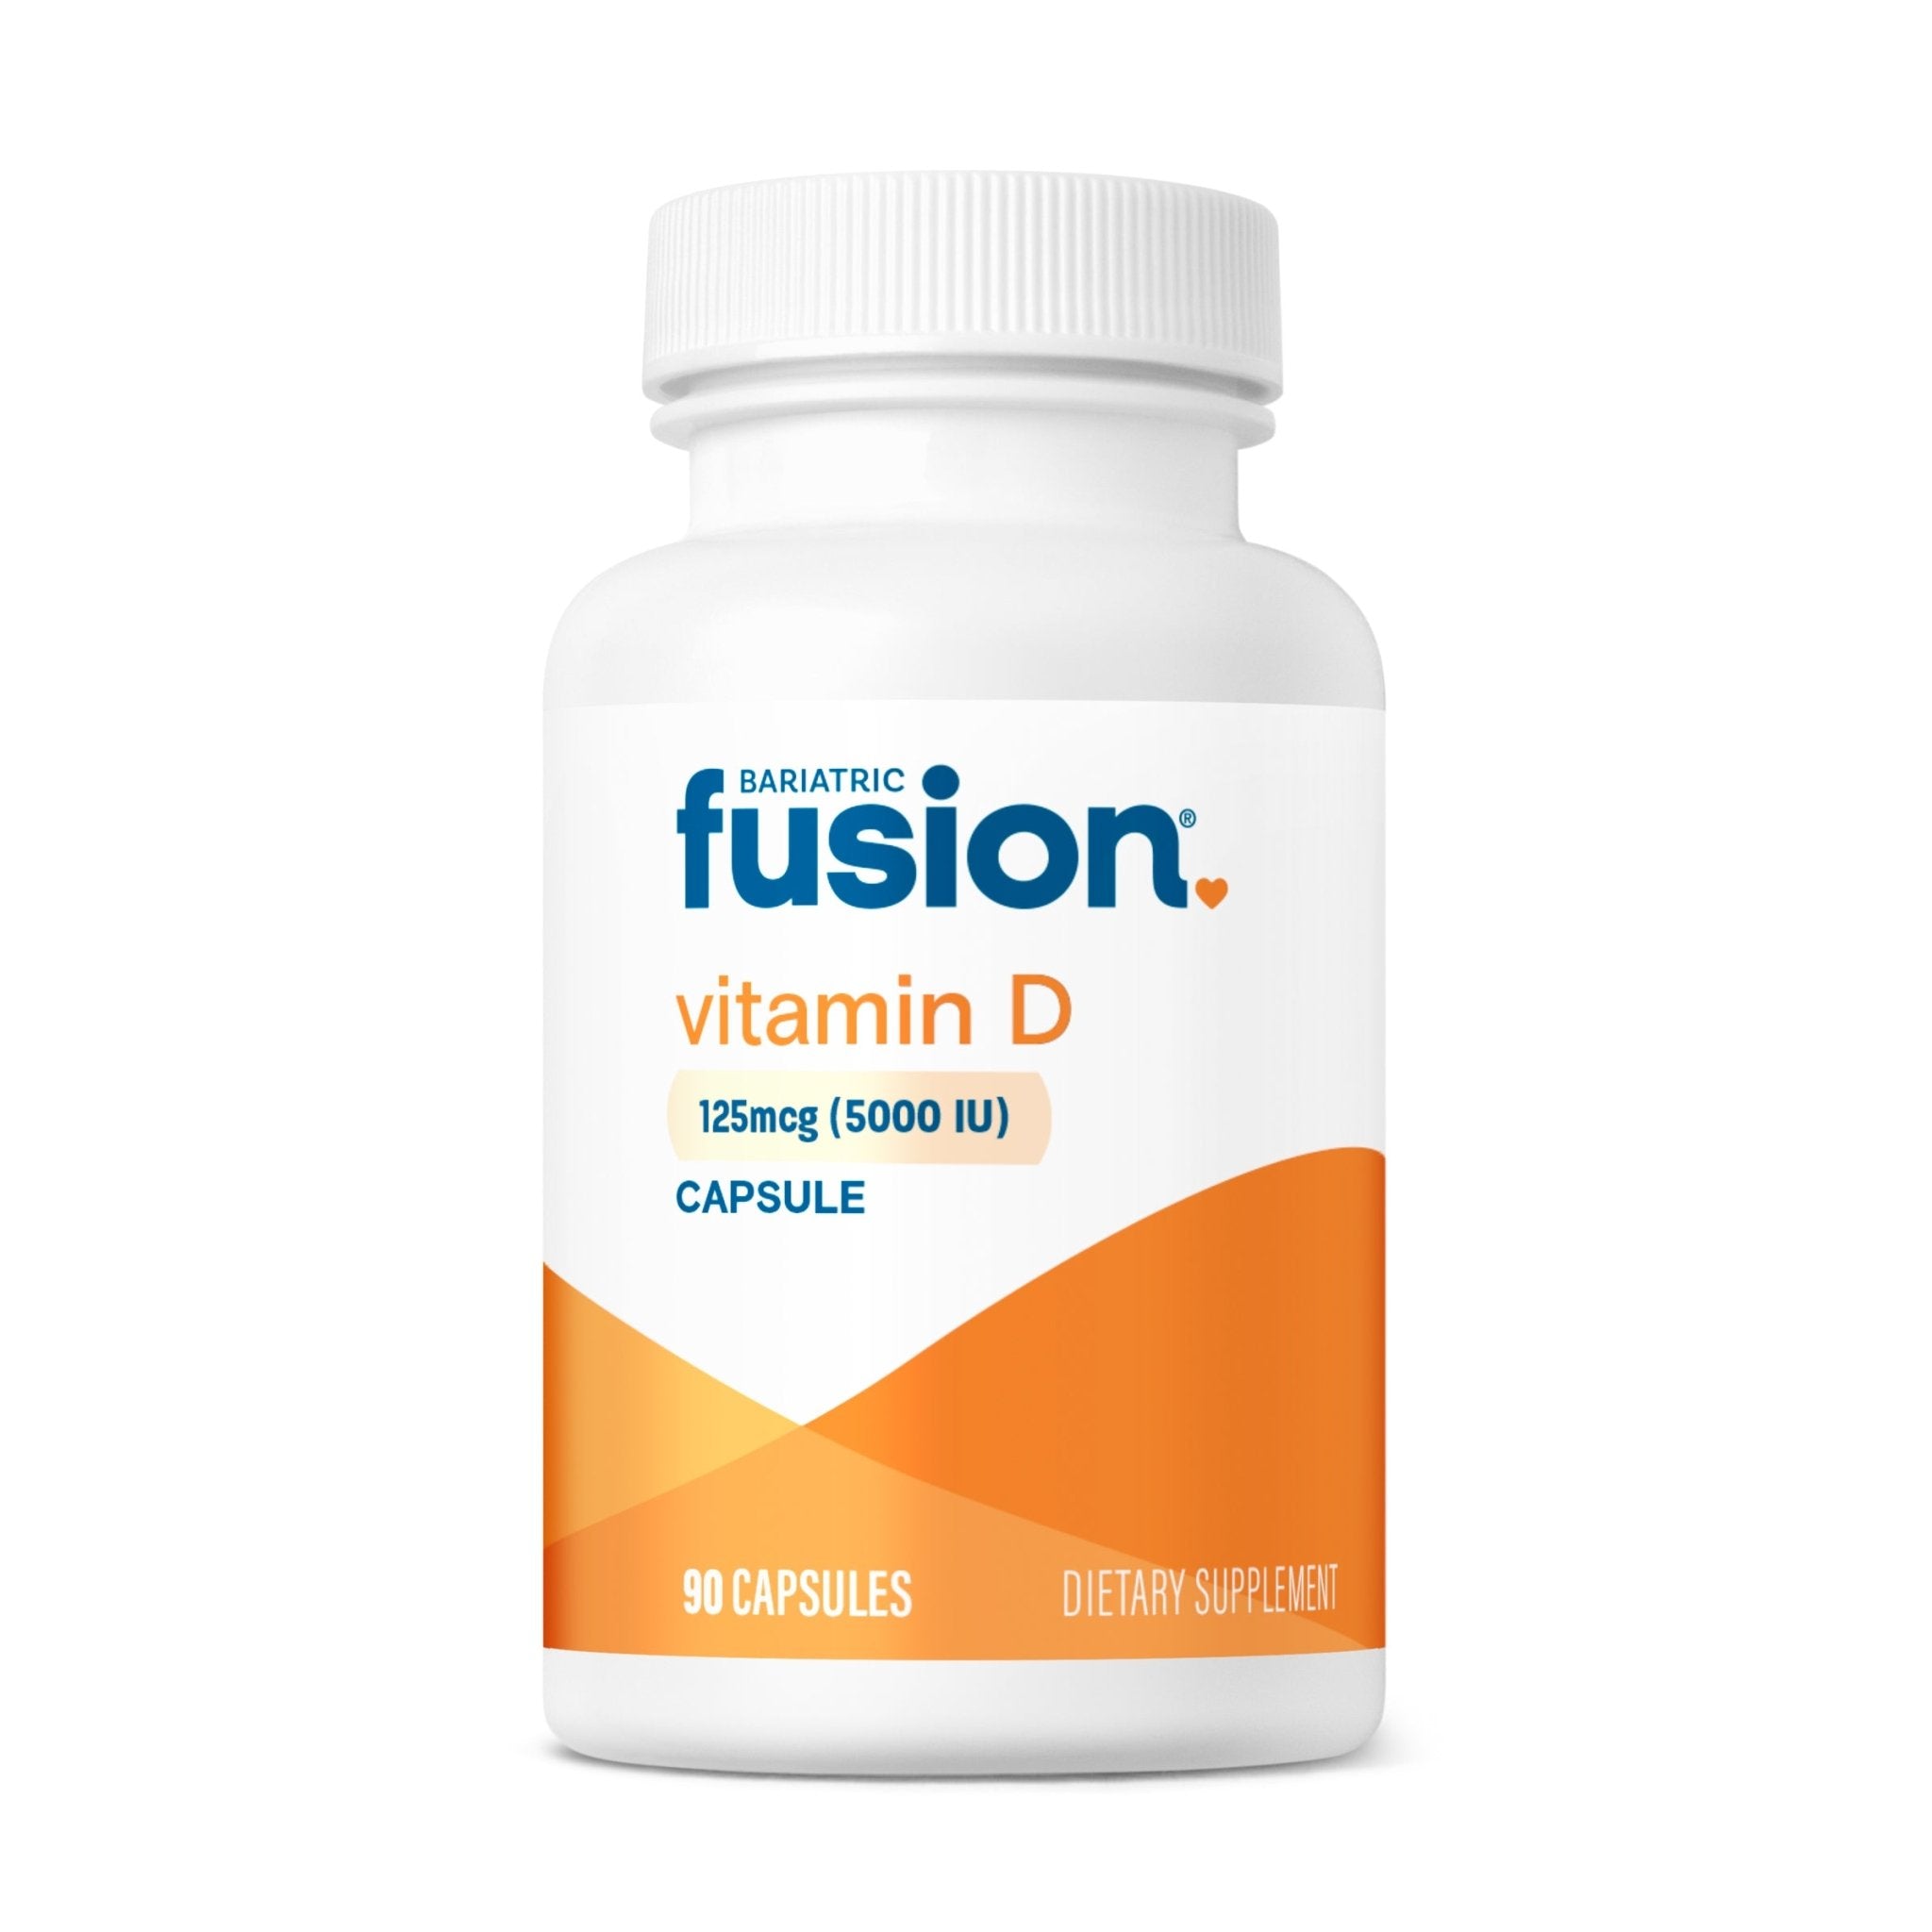 Bariatric Fusion Vitamin D 5000 IU capsules.